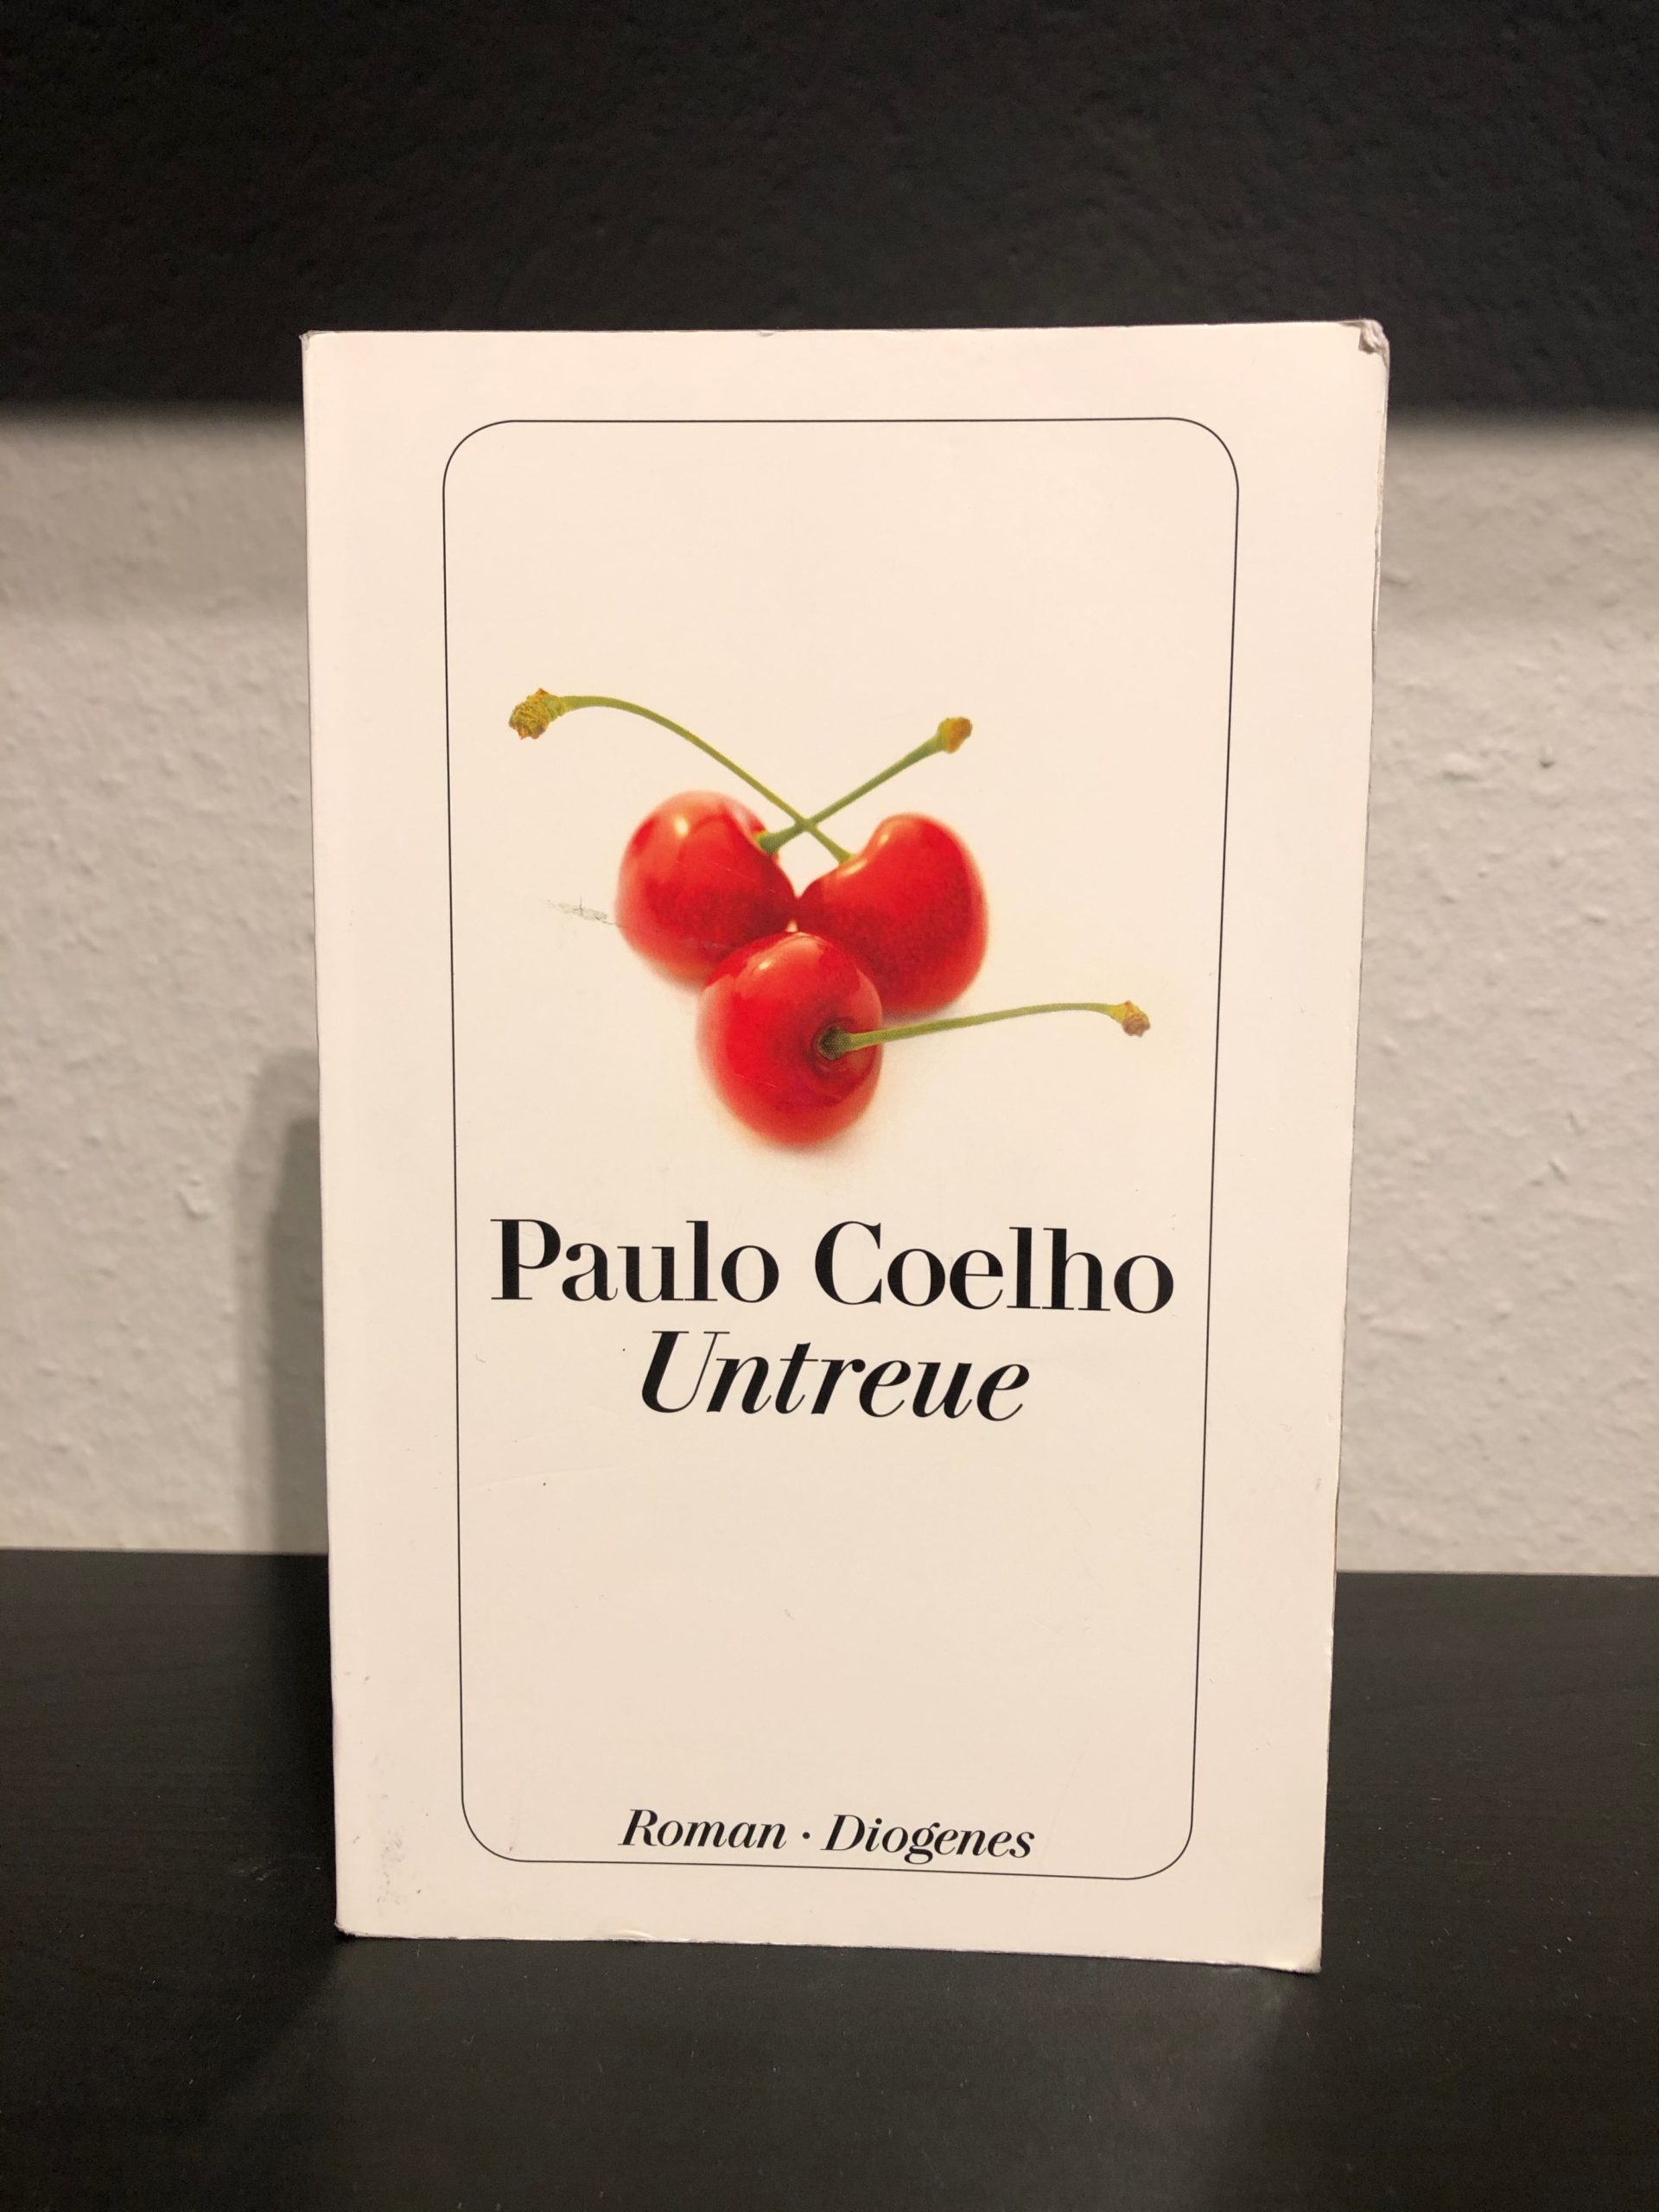 Untreue - Paulo Coelho